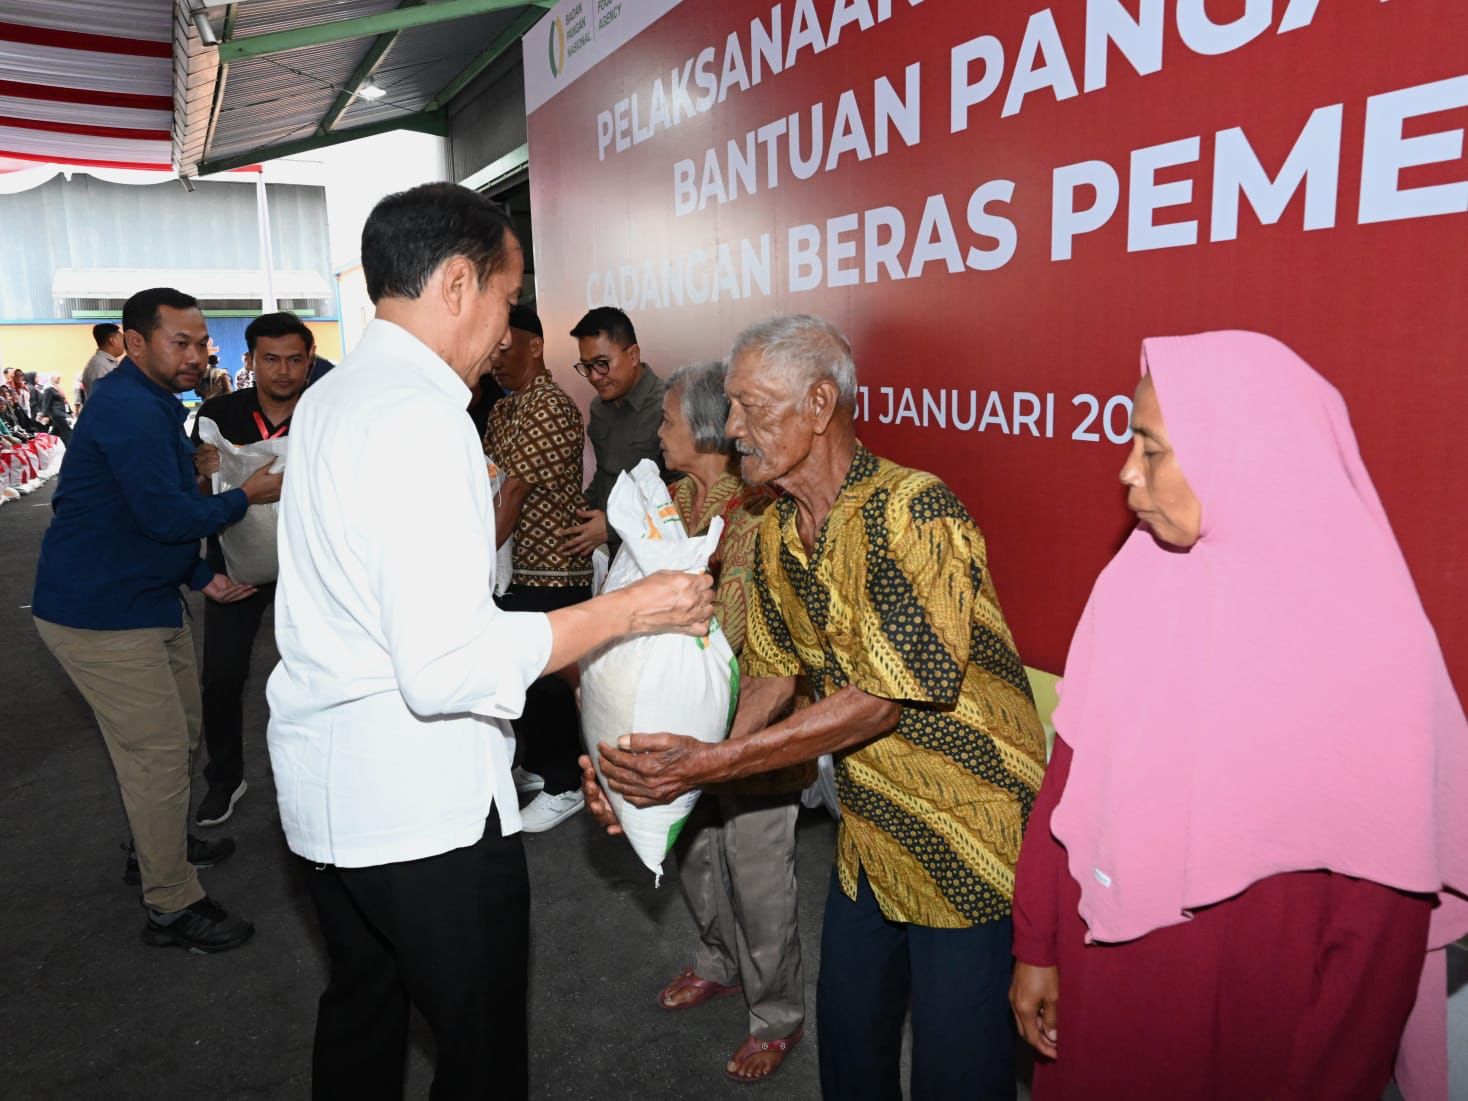 Momen Presiden Joko Widodo (Jokowi) memberikan Bantuan Langsung Tunai (BLT) untuk memitigasi risiko pangan kepada masyarakat | X @jokowi